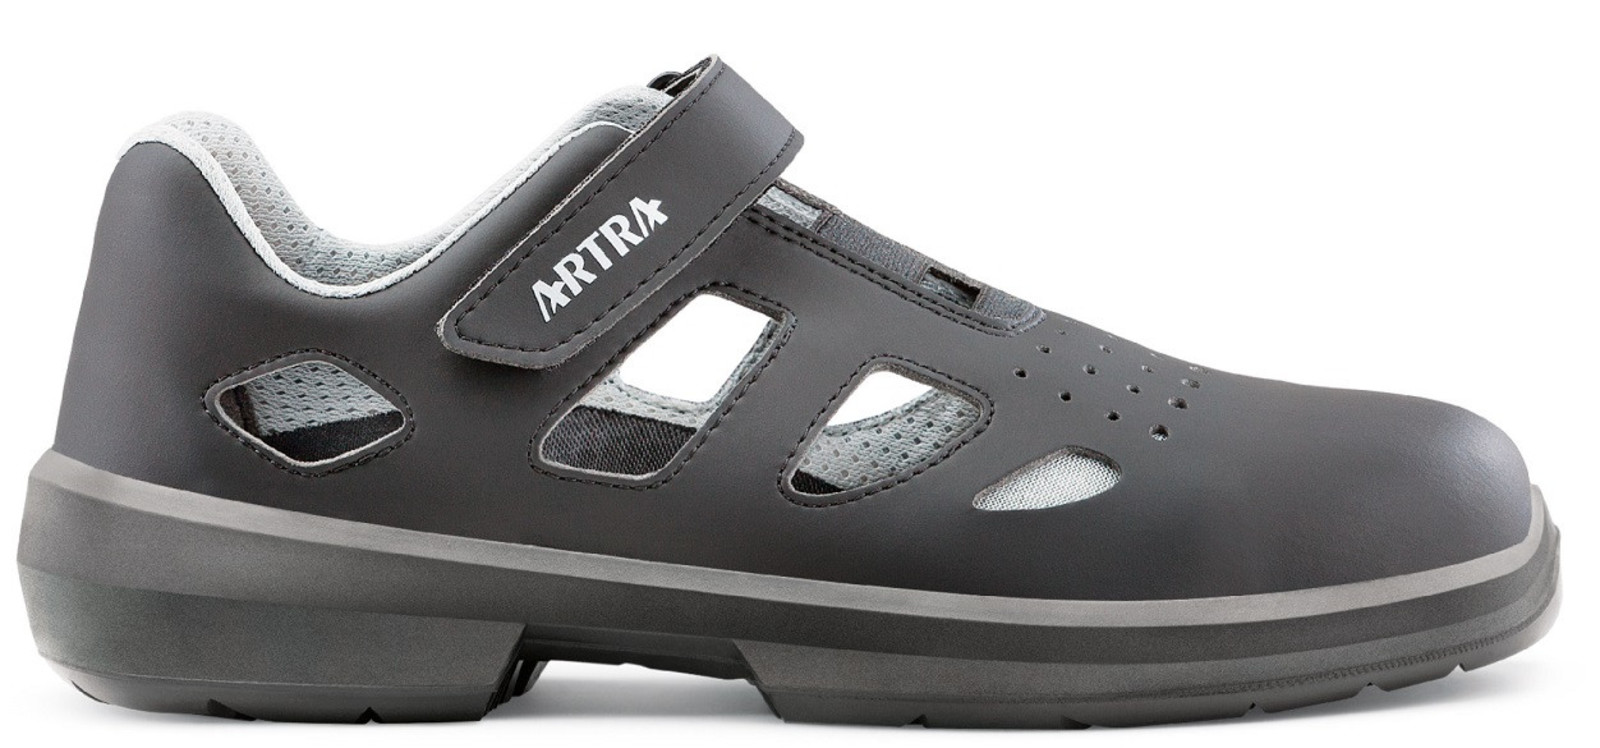 Bezpečnostné sandále Artra Ario 801 671460 S1P - veľkosť: 42, farba: čierna